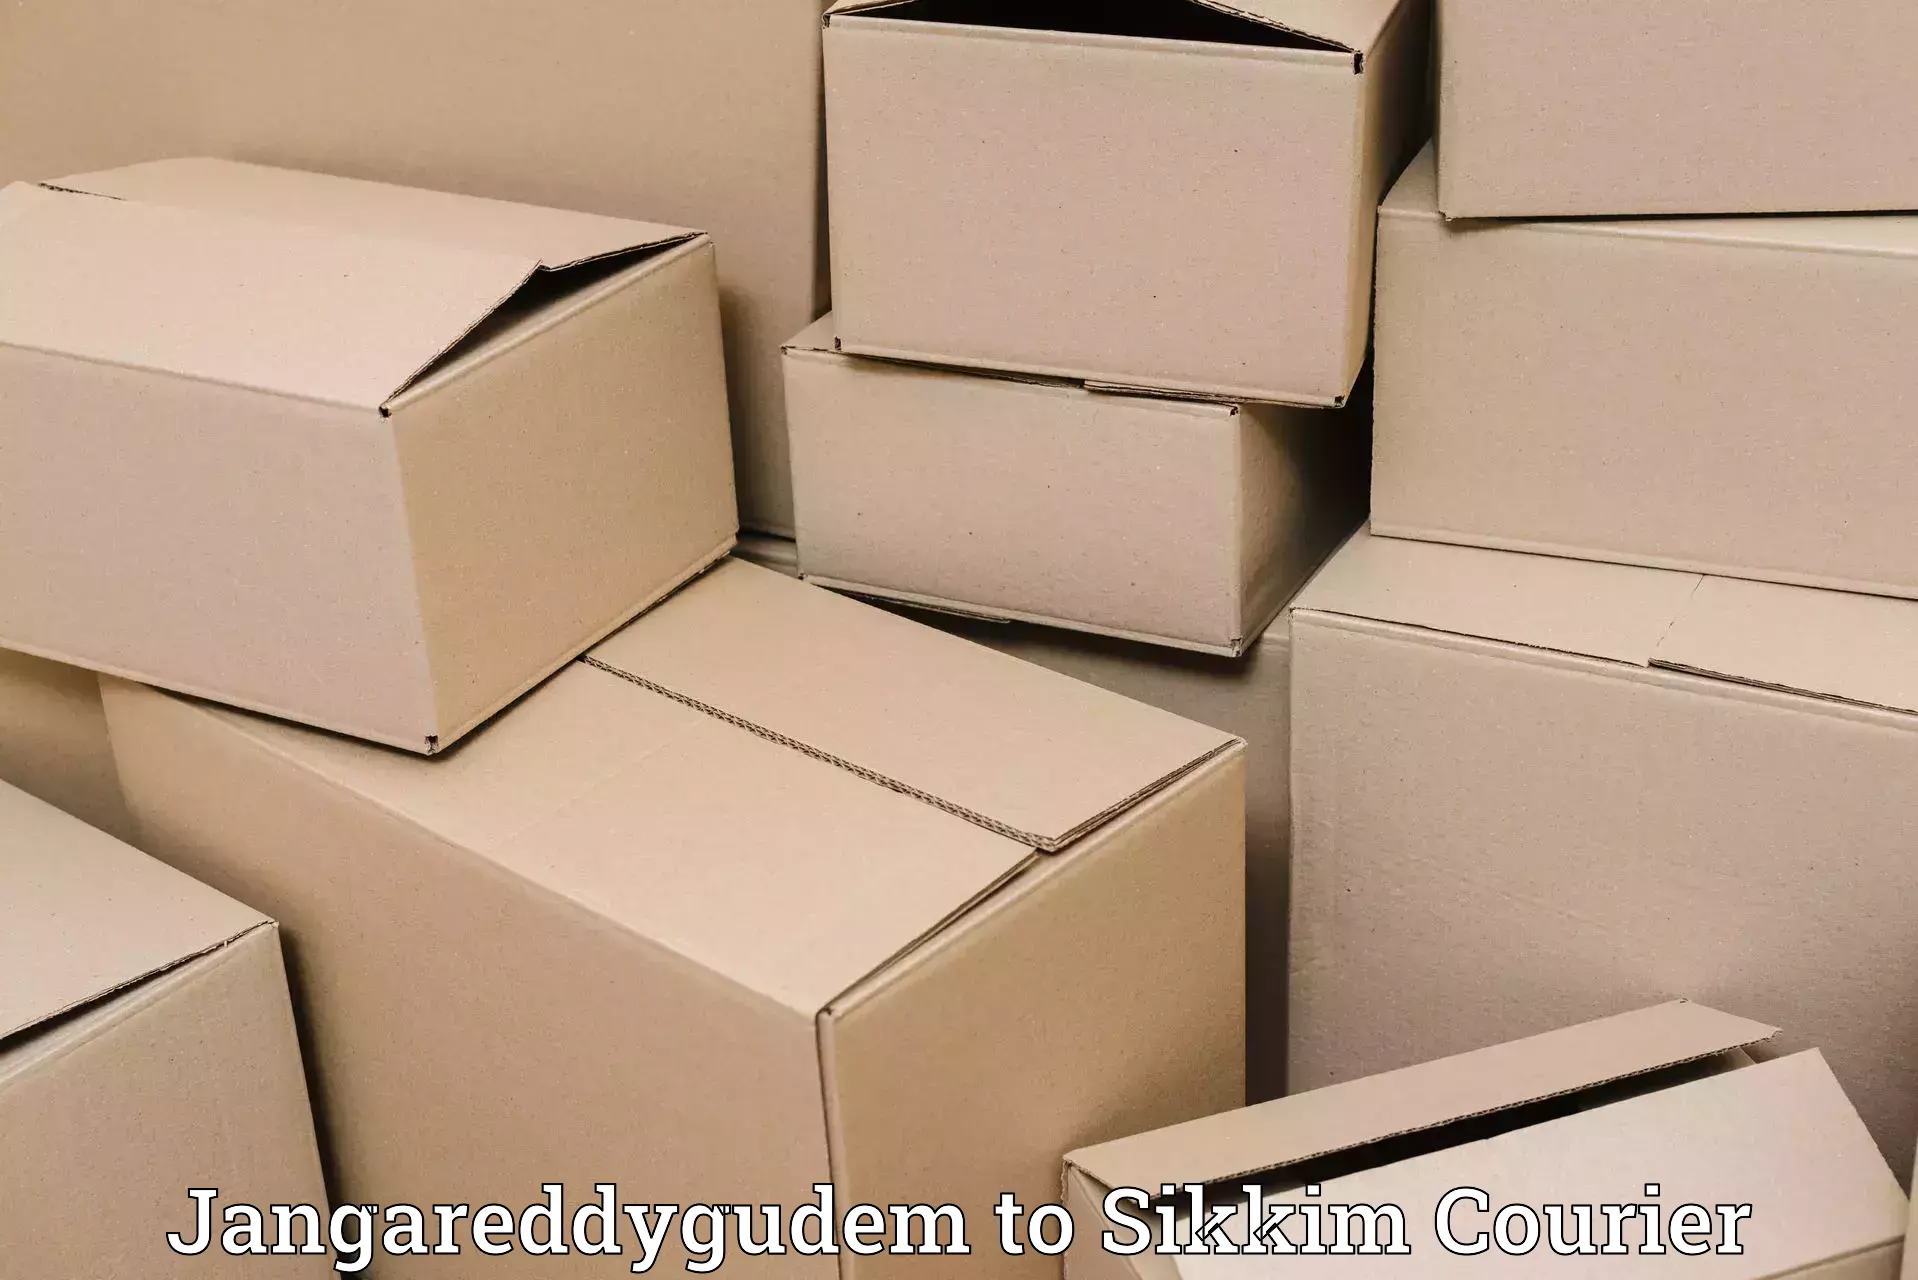 Global parcel delivery Jangareddygudem to North Sikkim